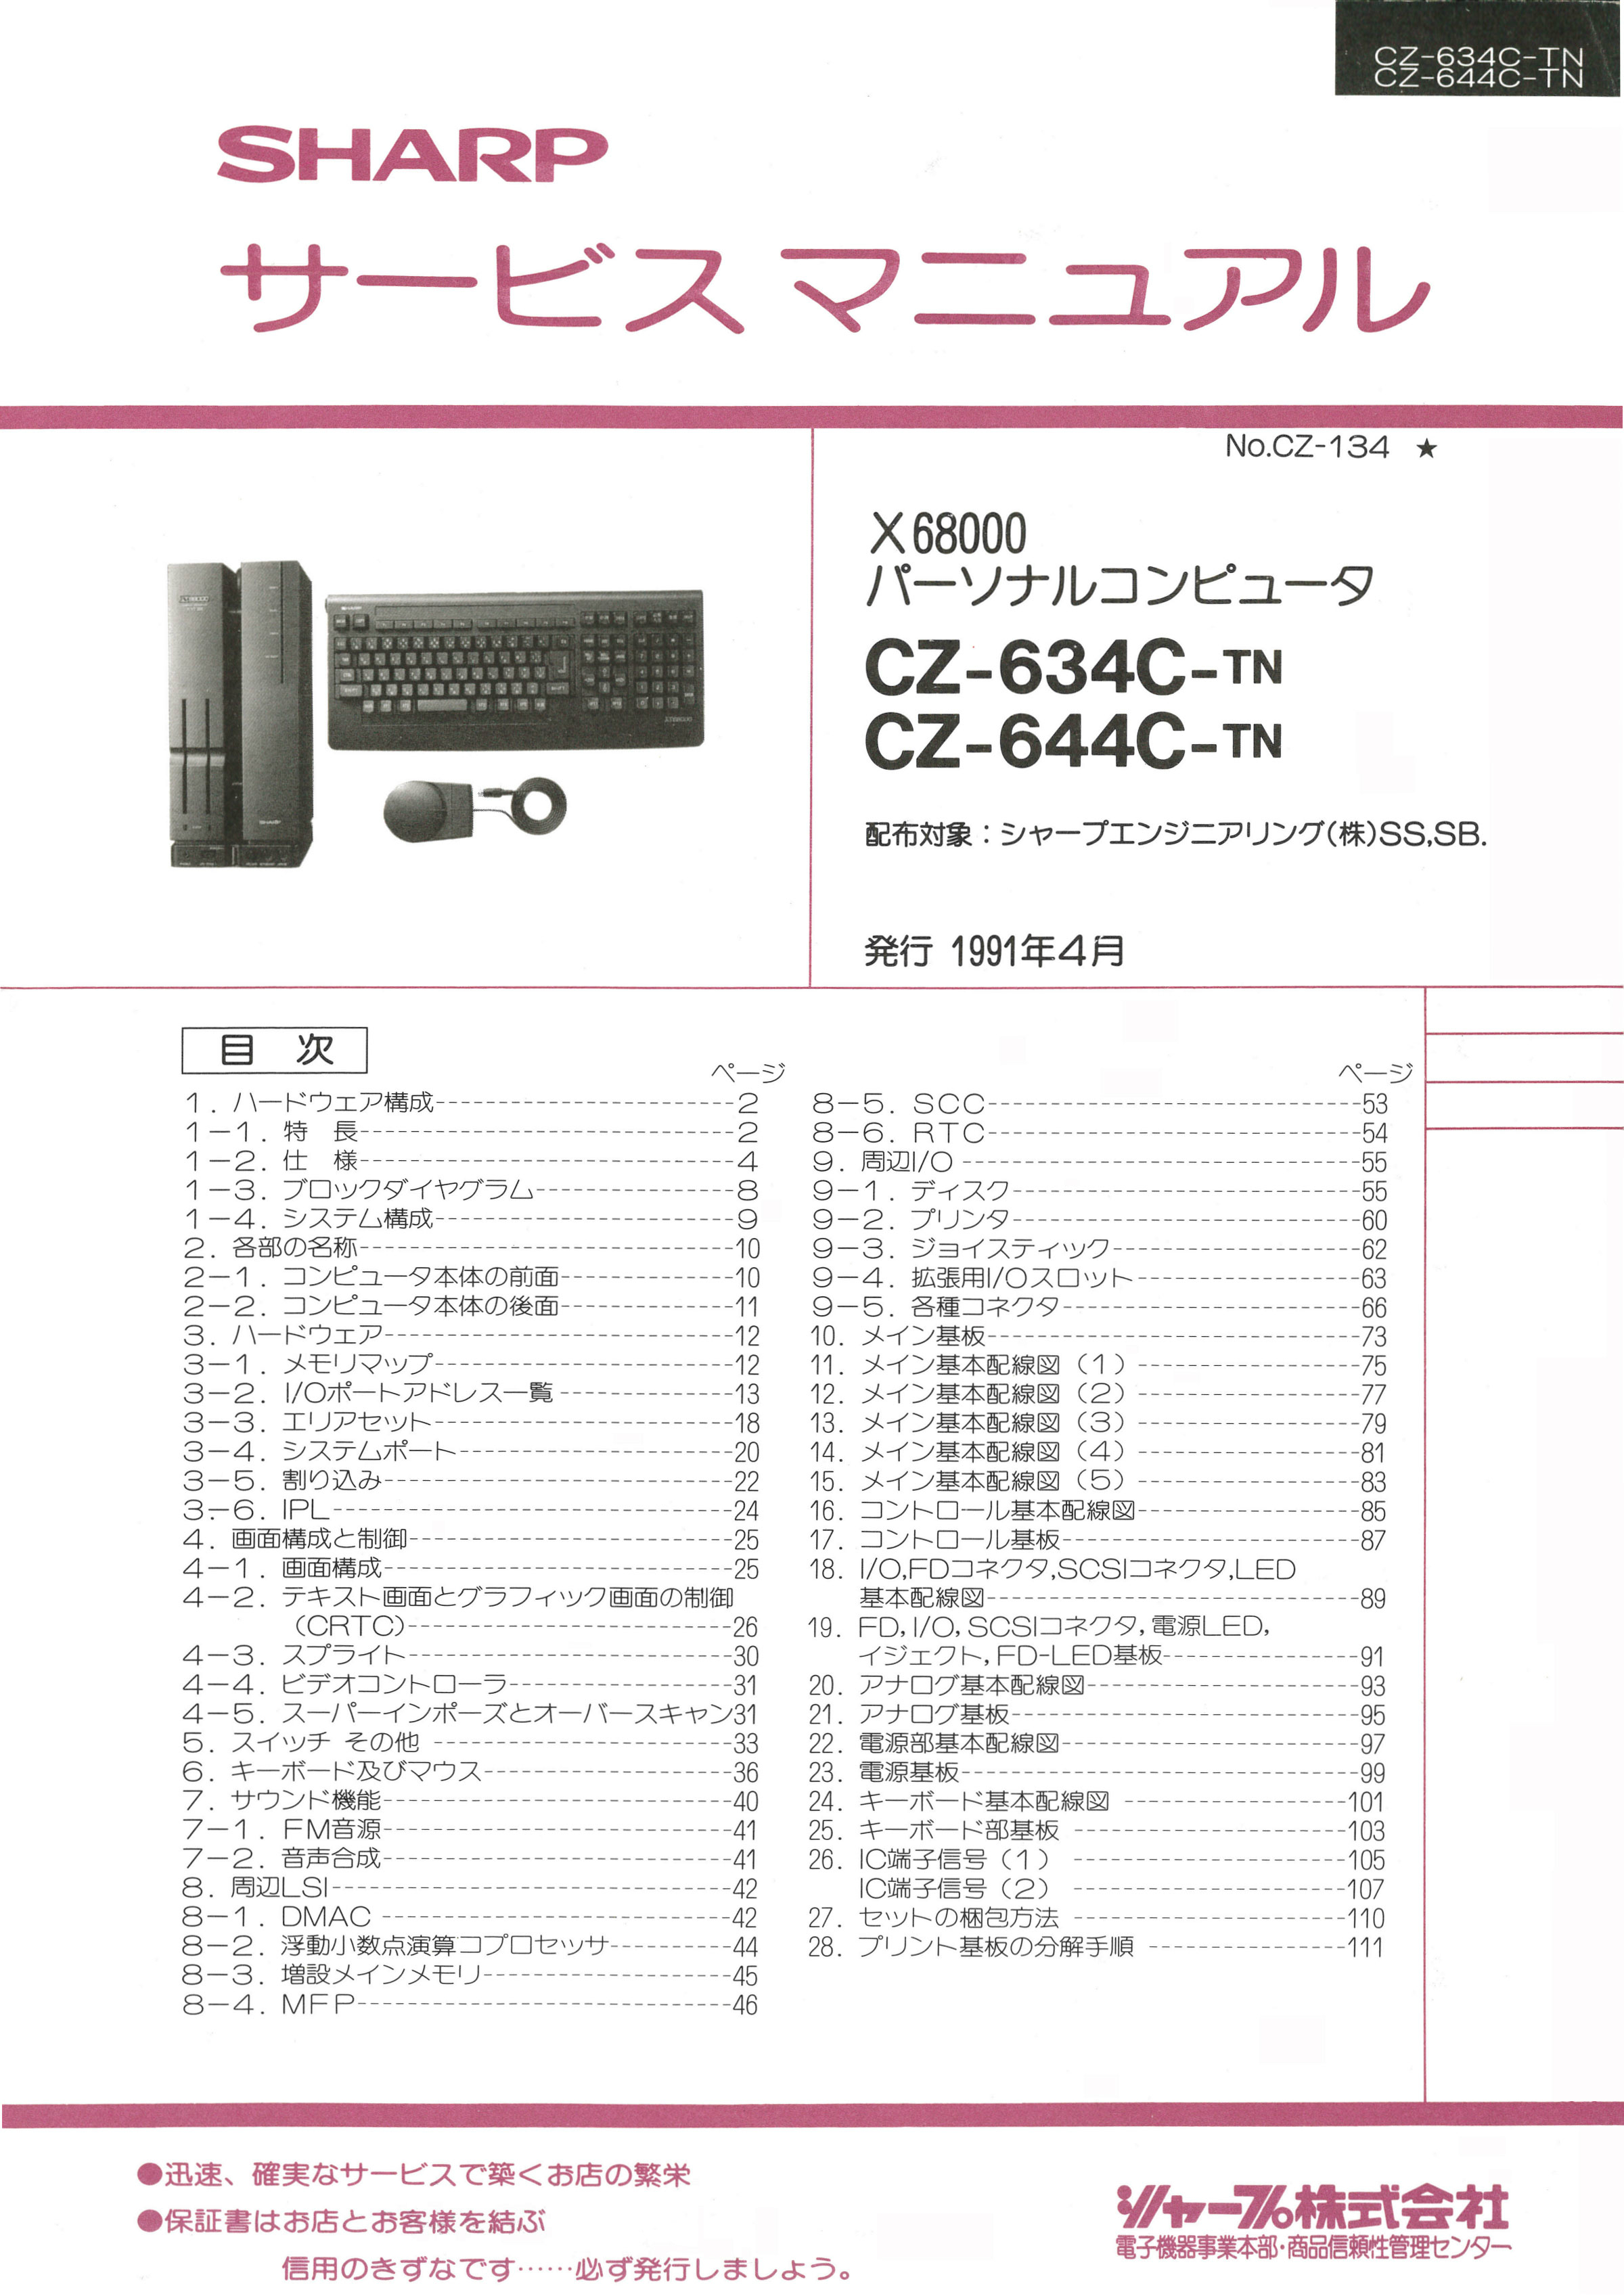 取説とはひと味違う、「X68000」シリーズのサービスマニュアルが復刻 - ITmedia eBook USER